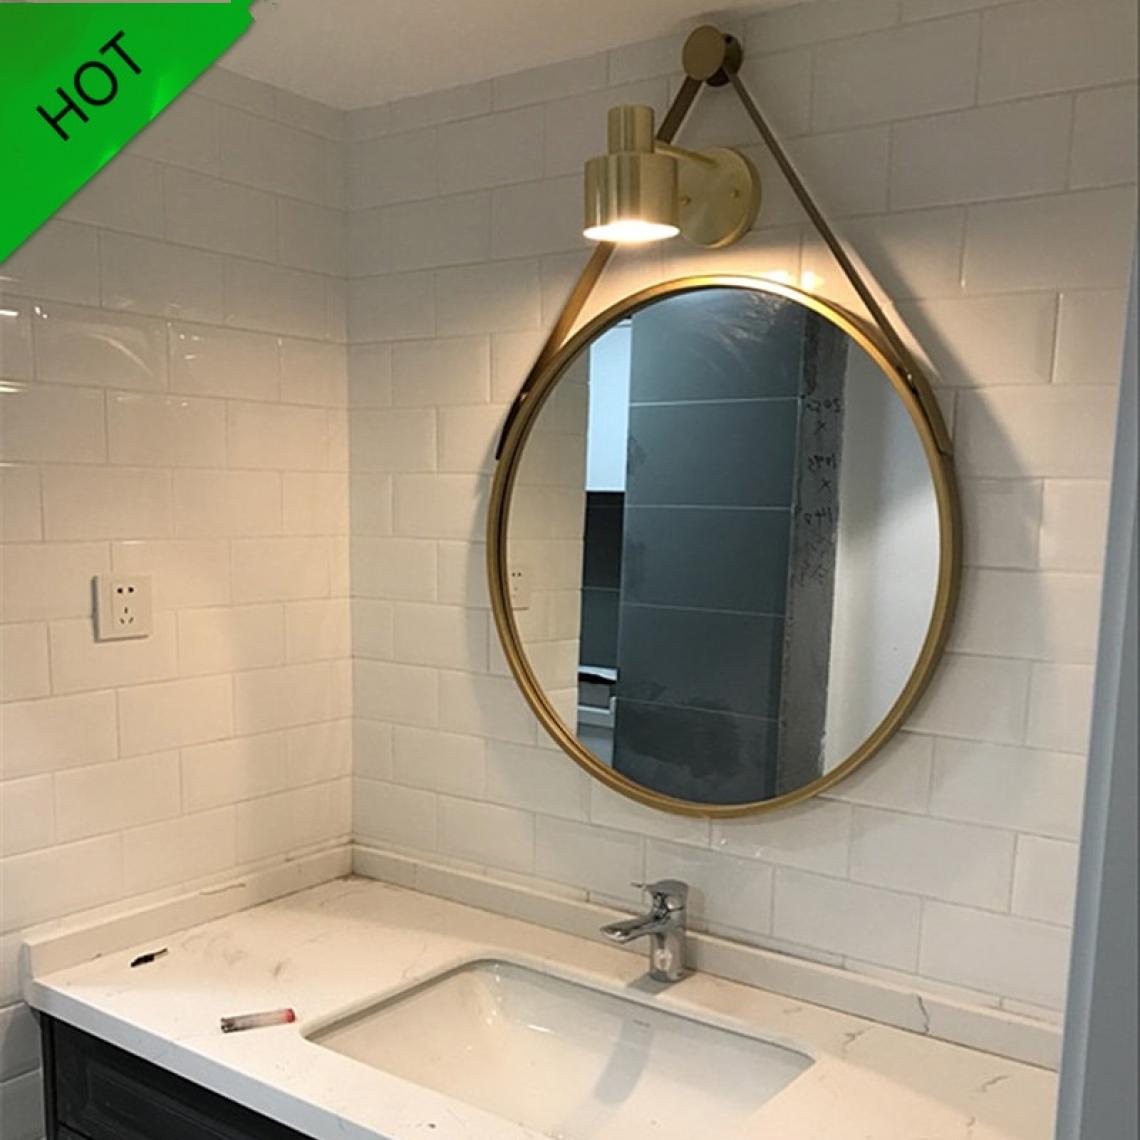 Universal - Miroir de bain idéal, miroir de toilette simple et élégant, miroir de toilette.(Or) - Miroir de salle de bain